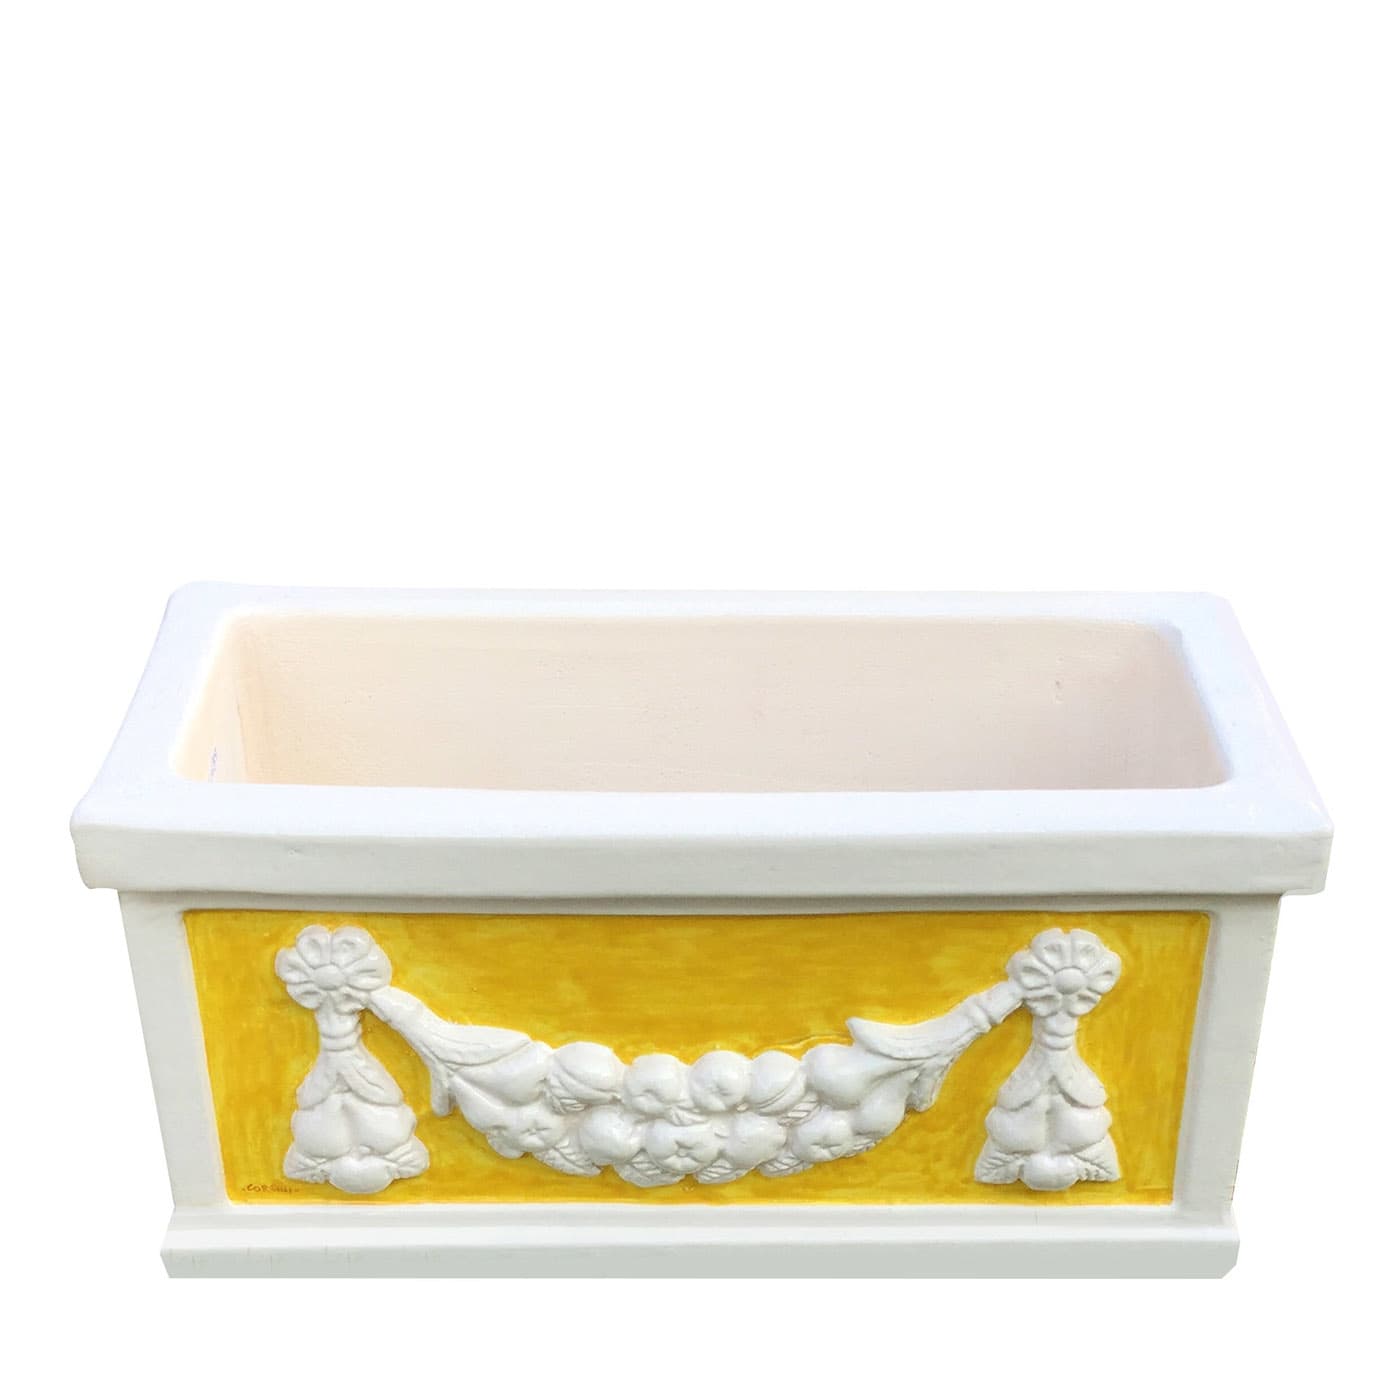 Festooned White & Yellow Planter - Ceramiche Corsini